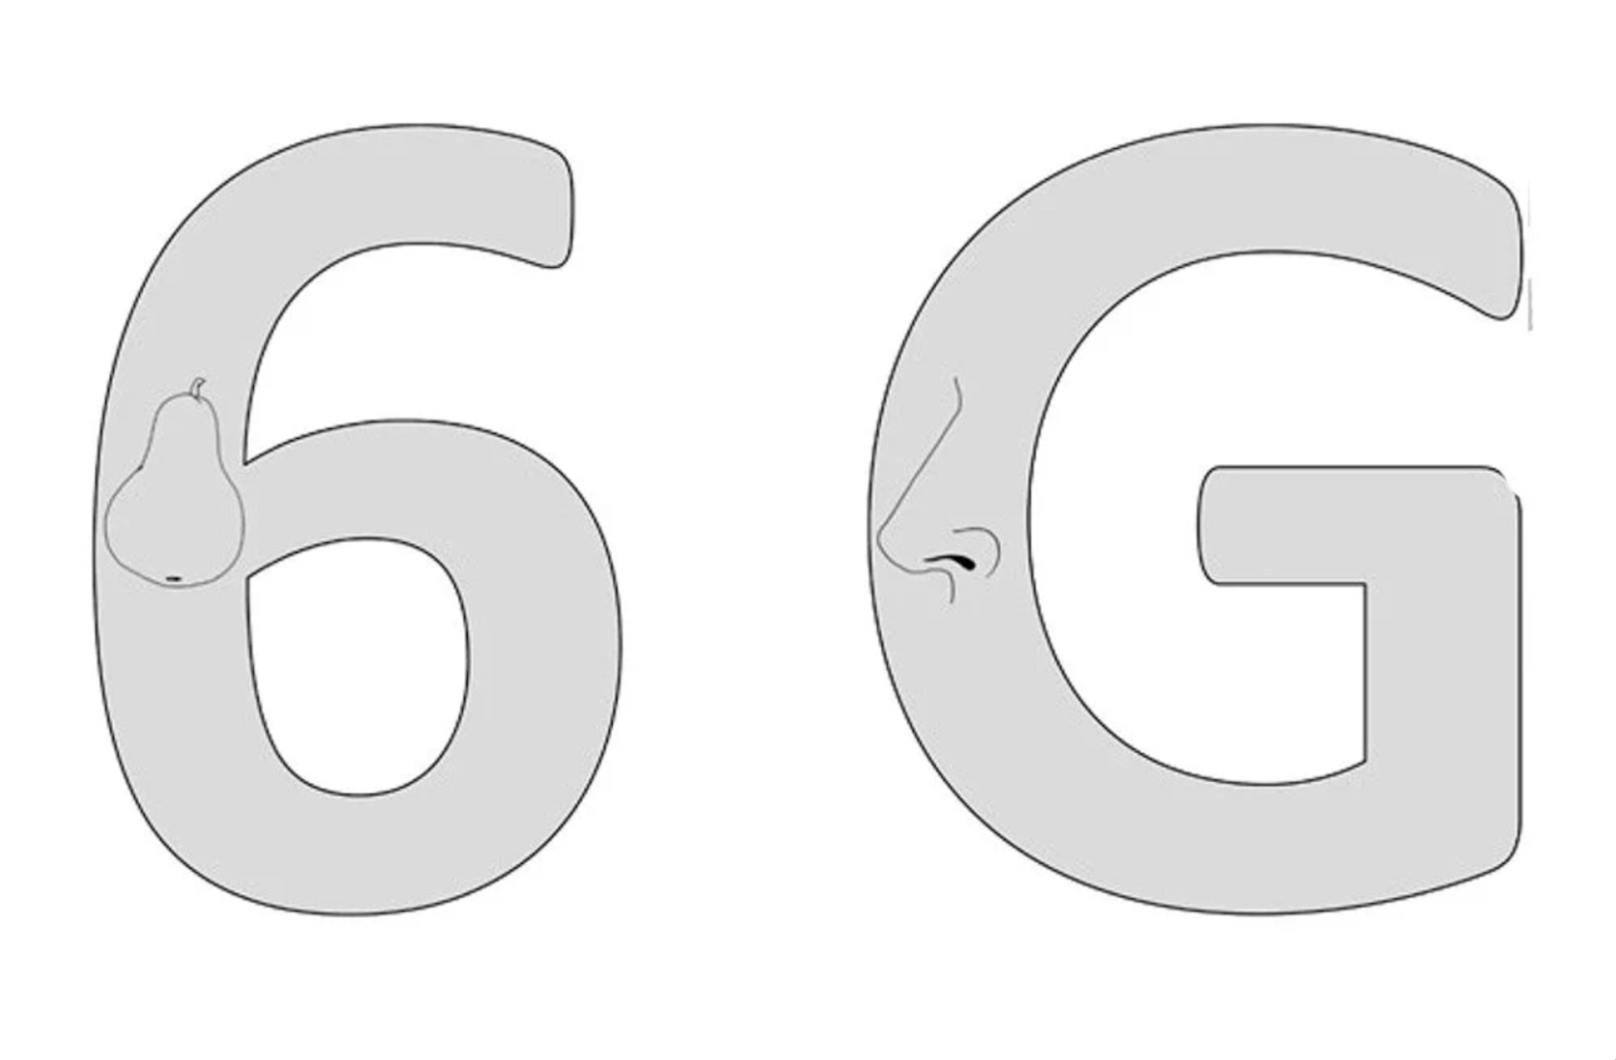 Einer der Tests zeigte, dass sich dieZahlenblindheit von R.F.S. auch auf Formen direkt auf oder neben den Ziffern überträgt. Obwohl "6" und "G" einander sehr ähneln, konnte R.F.S. zwar eine eingebettete Nase, nicht aber die Zahl mit der Birne erkennen.